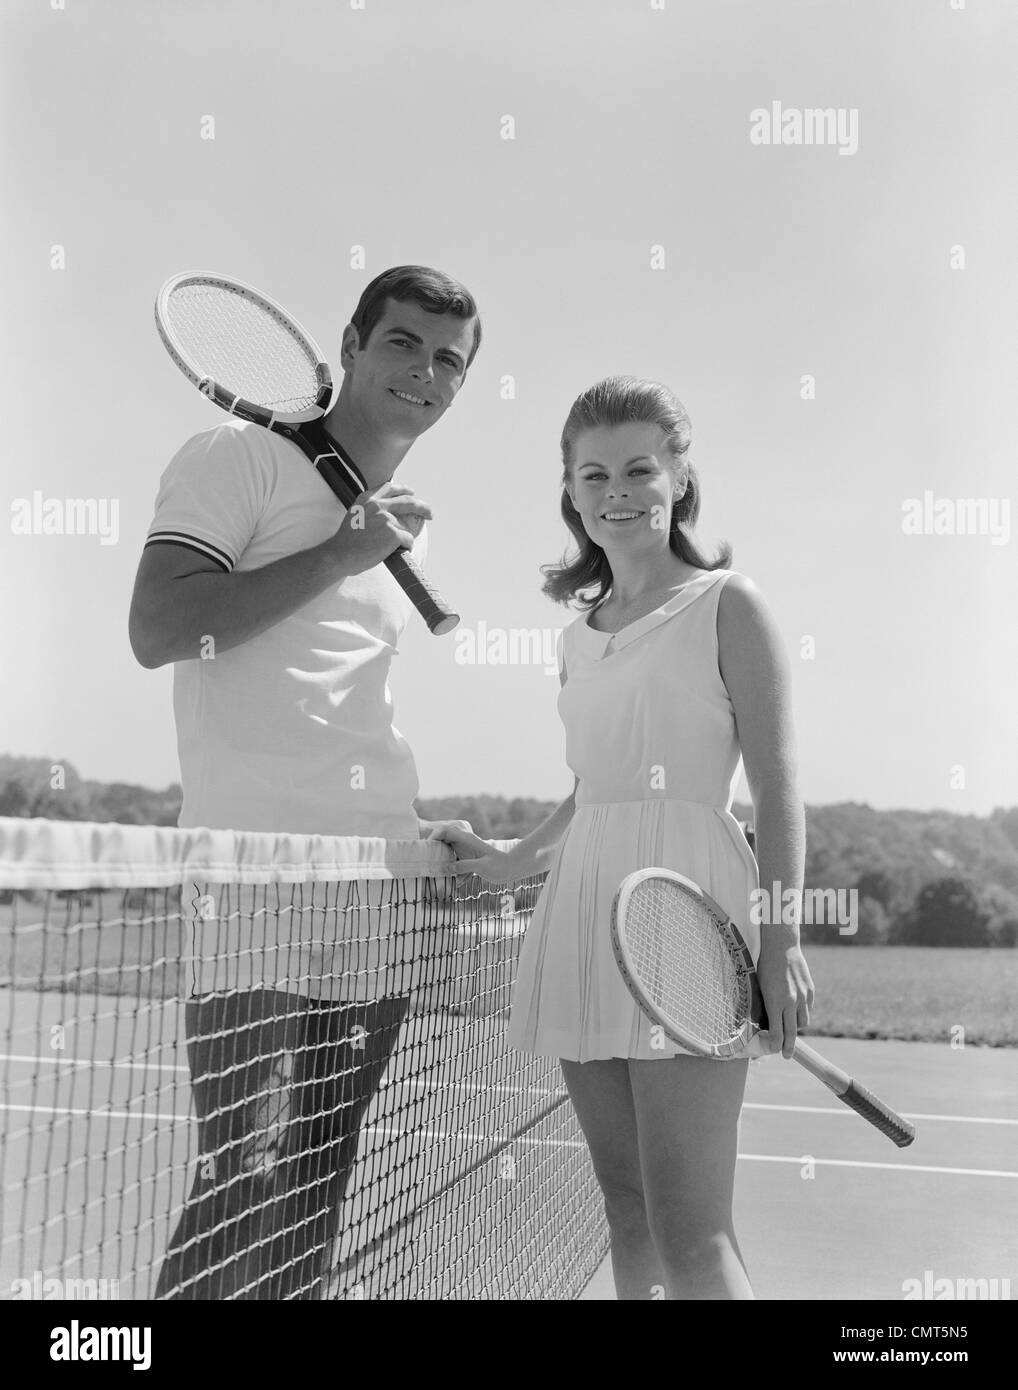 Tenniskleidung für frauen Schwarzweiß-Stockfotos und -bilder - Alamy